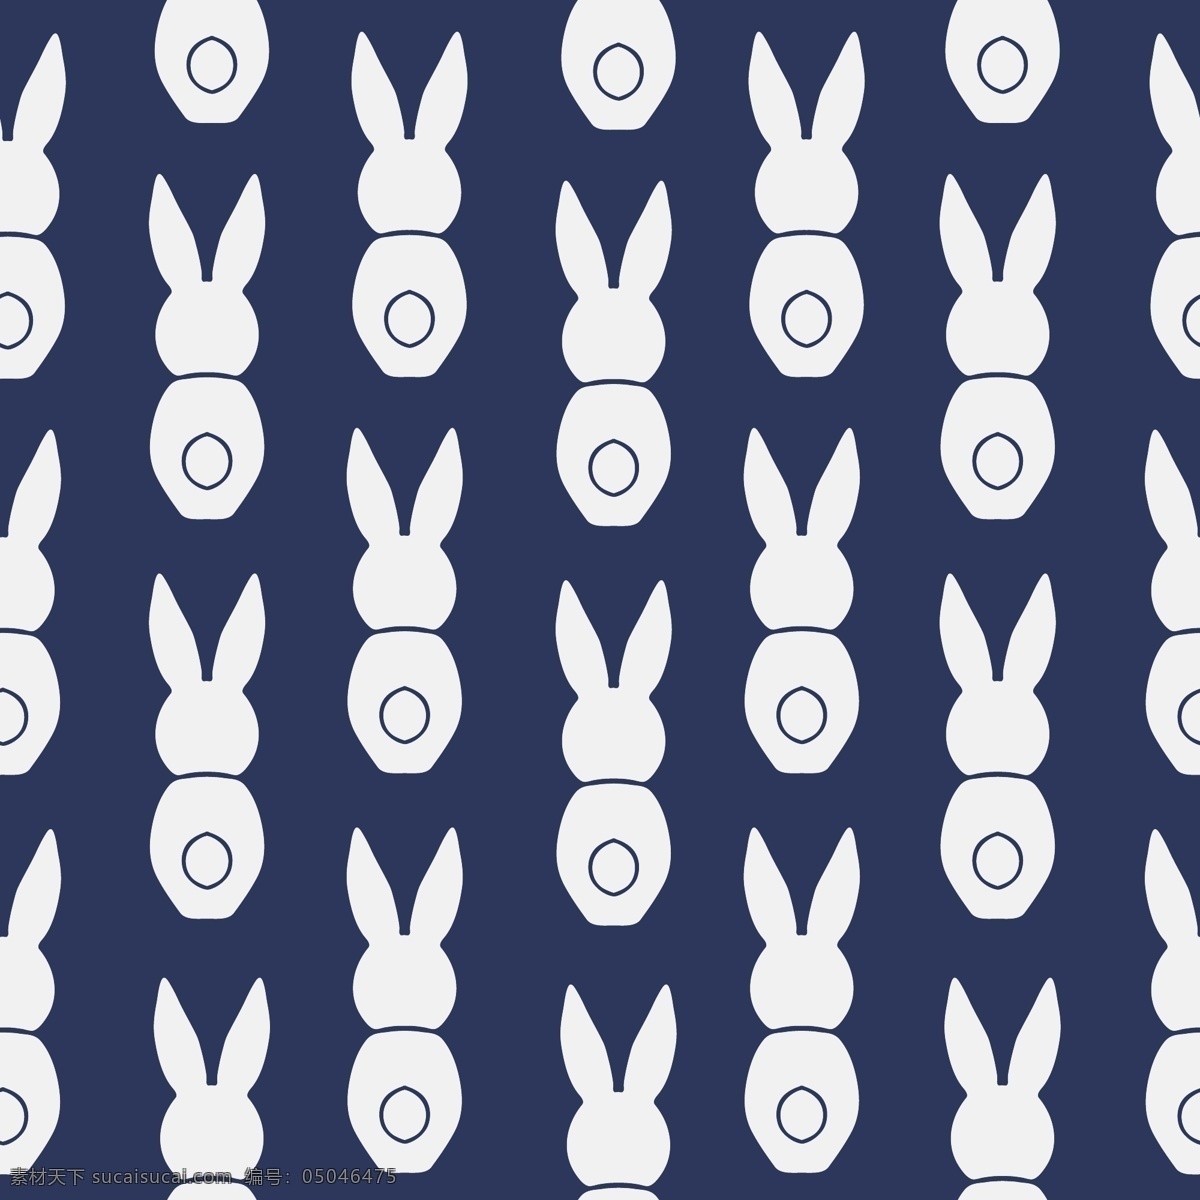 兔子 四方 连续 图 四方连续图 卡通素材 矢量素材 矢量兔子 分层 背景素材